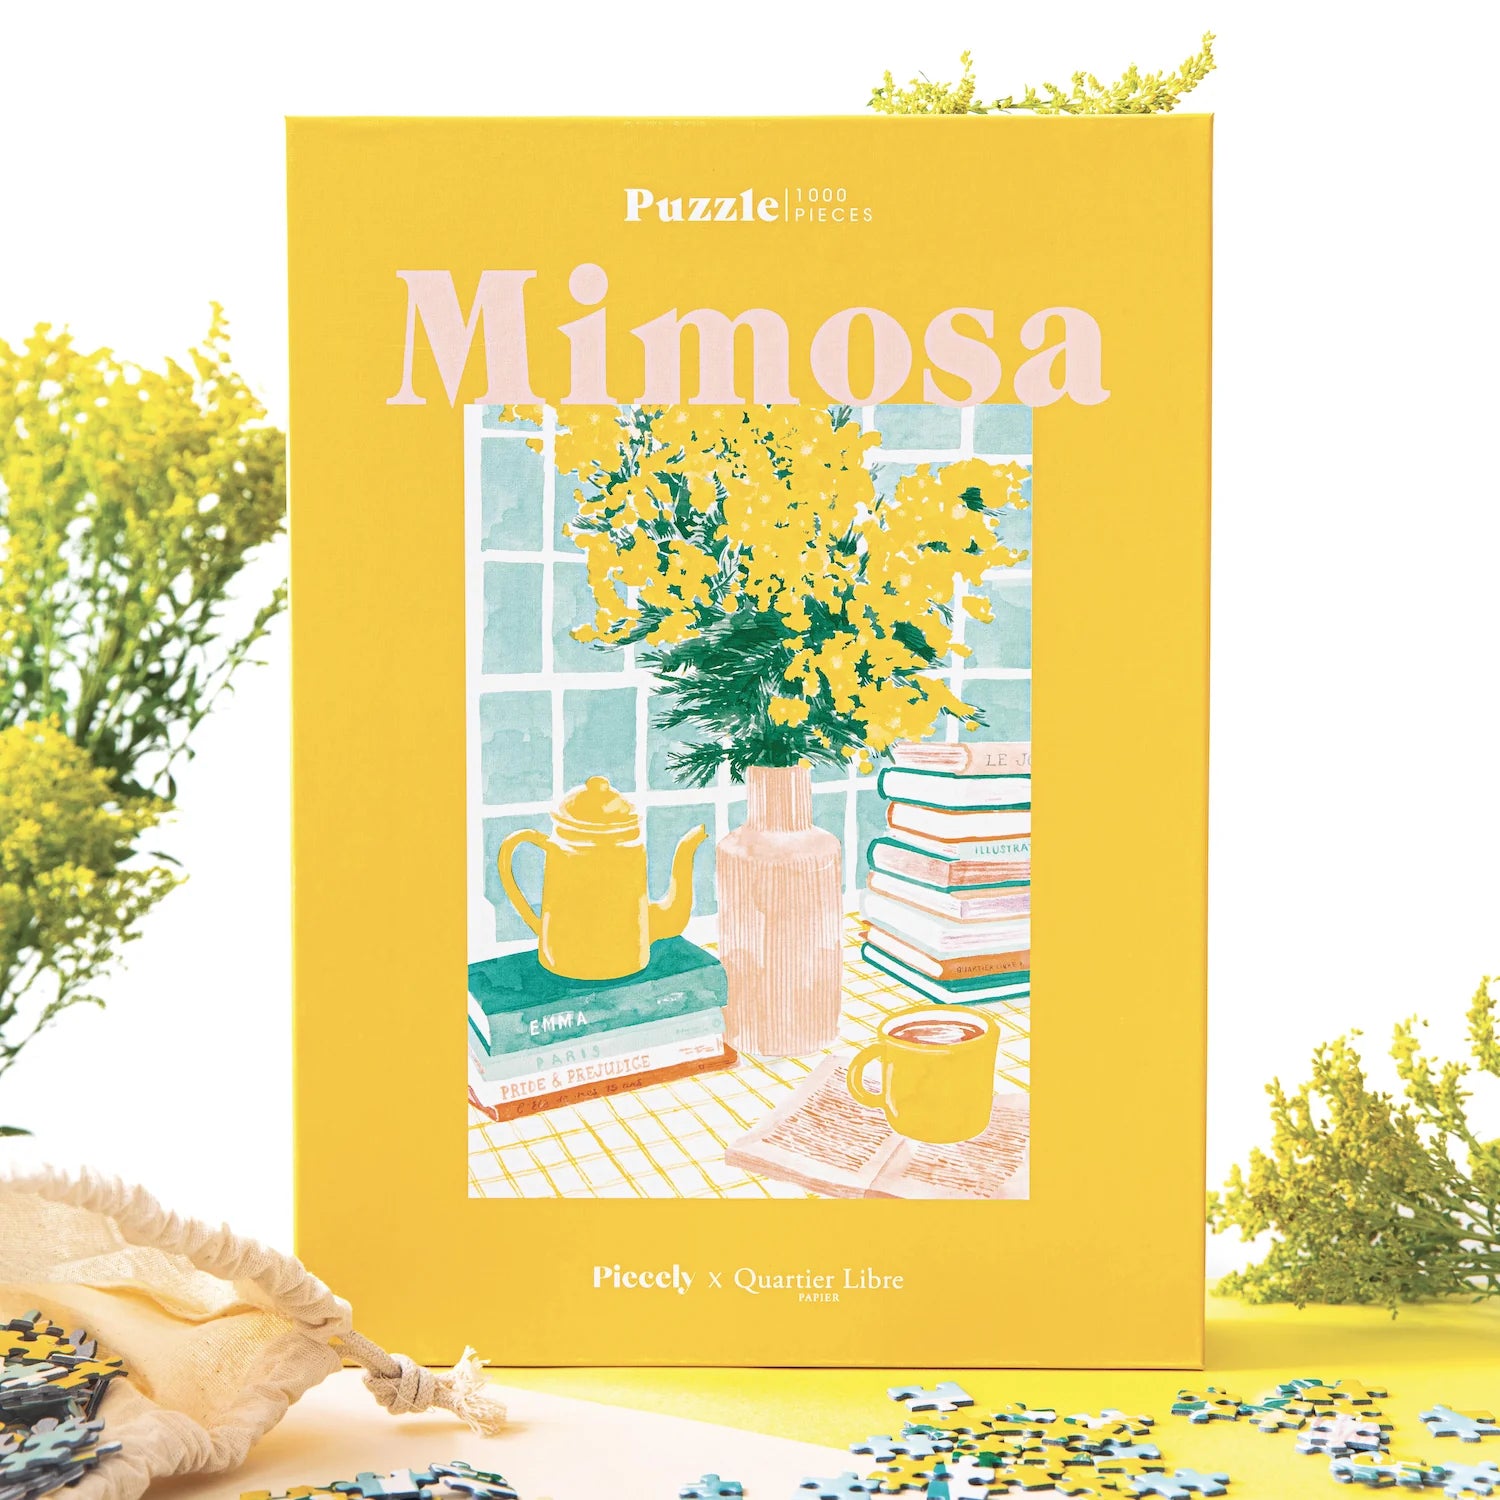 Mimosa puzzle, 1000 pieces